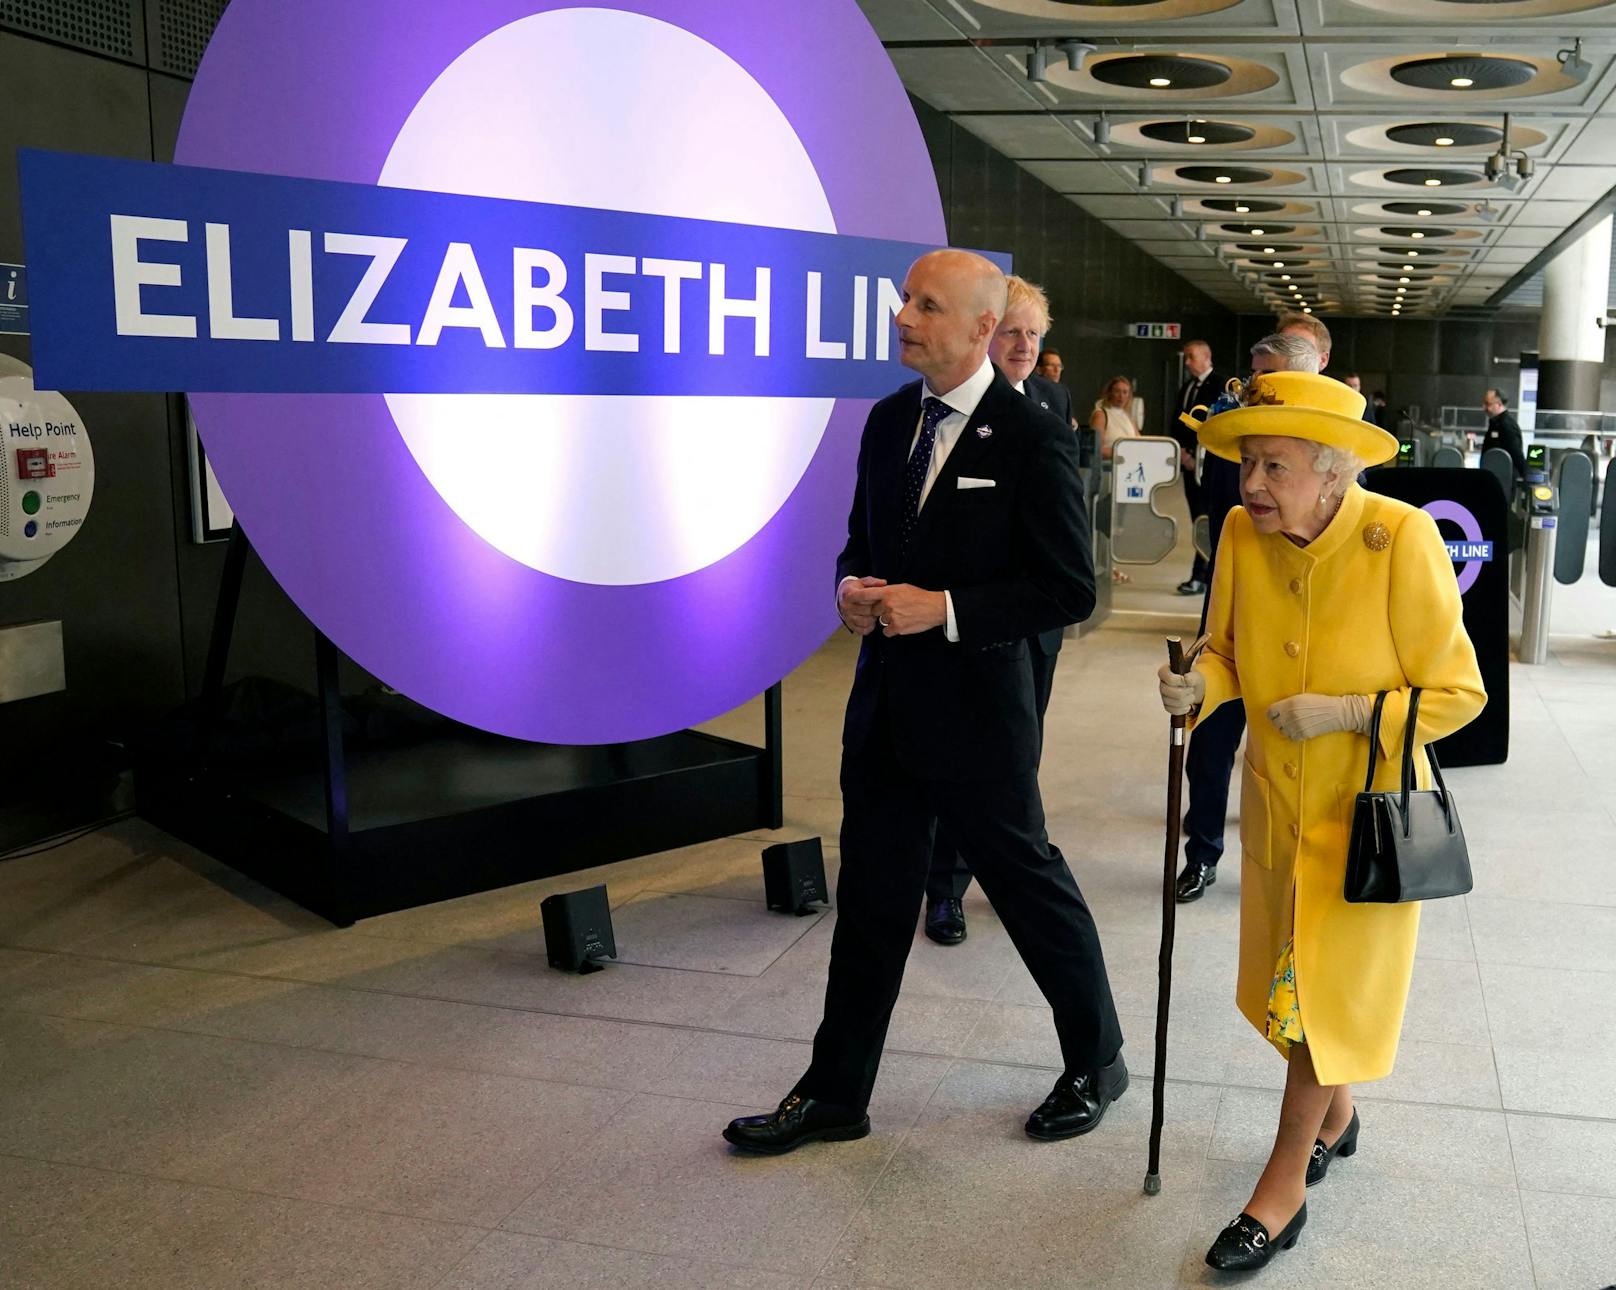 Die neue Linie wurde nach der Monarchin benannt.